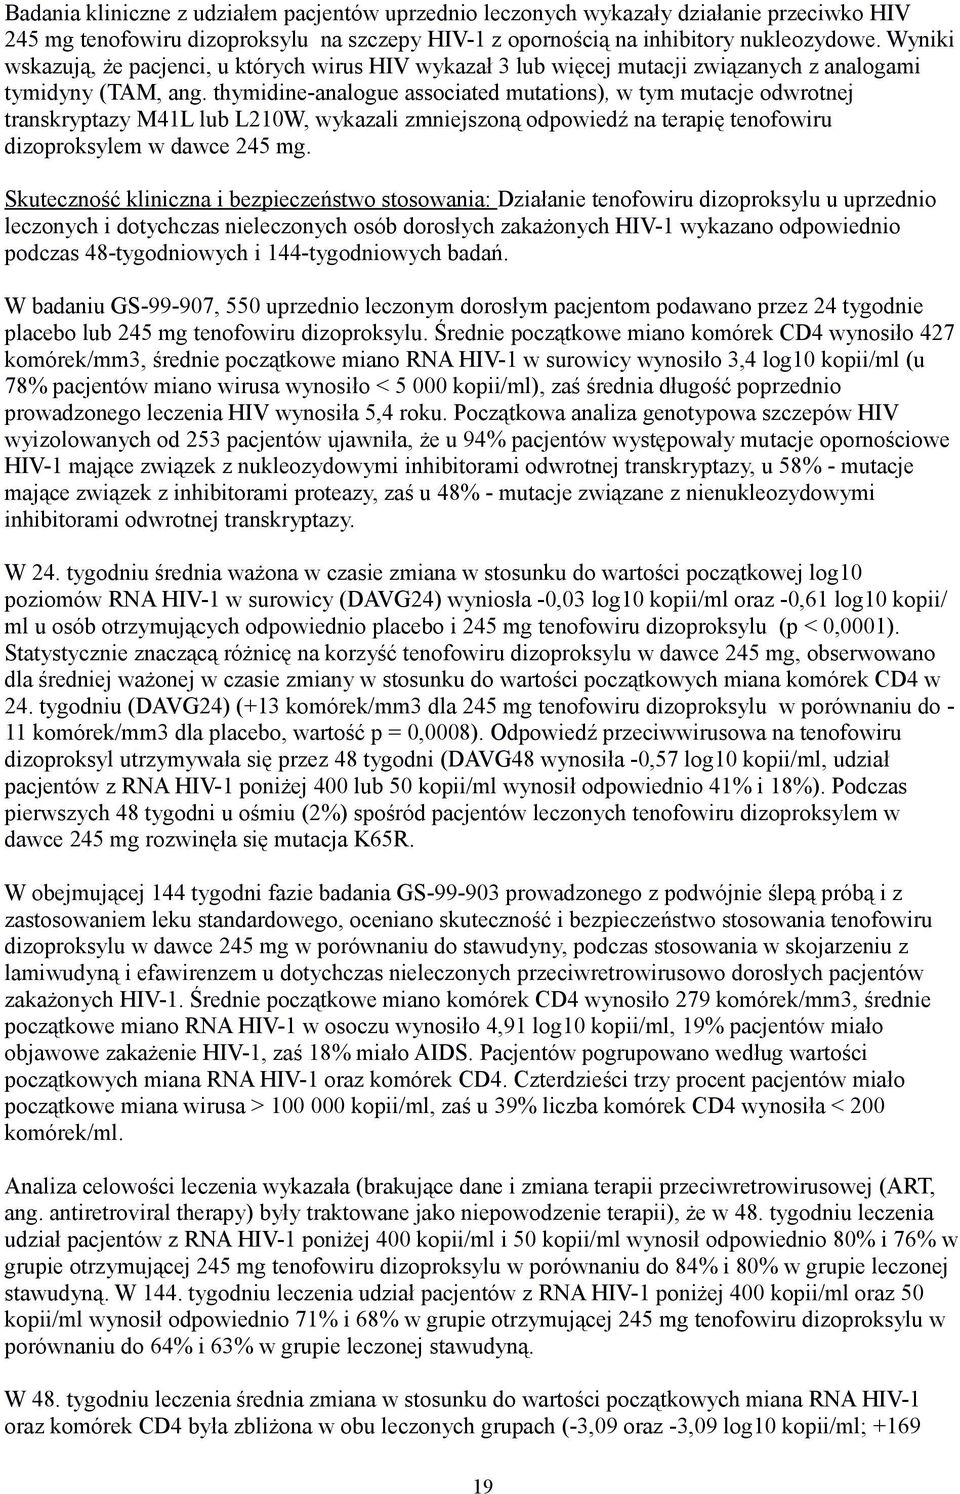 thymidine-analogue associated mutations), w tym mutacje odwrotnej transkryptazy M41L lub L210W, wykazali zmniejszoną odpowiedź na terapię tenofowiru dizoproksylem w dawce 245 mg.